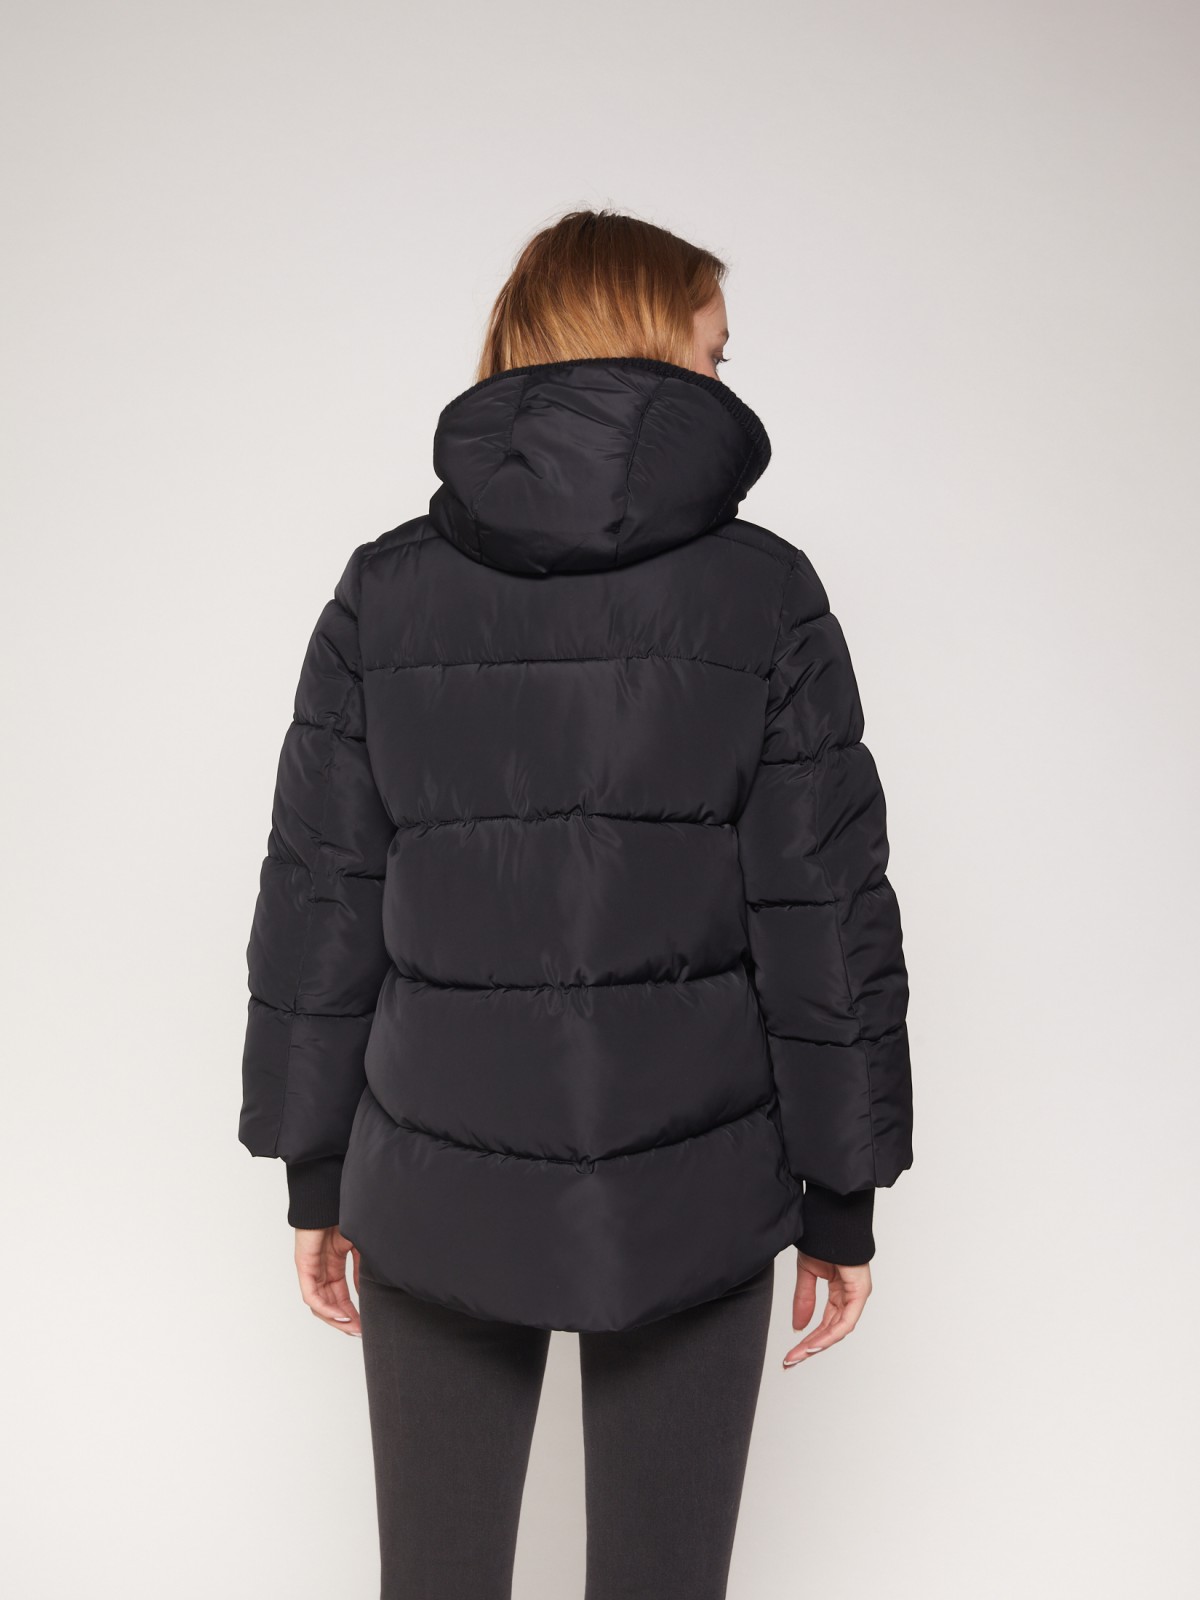 Тёплая стёганая куртка с капюшоном zolla 021335102264, цвет черный, размер S - фото 6